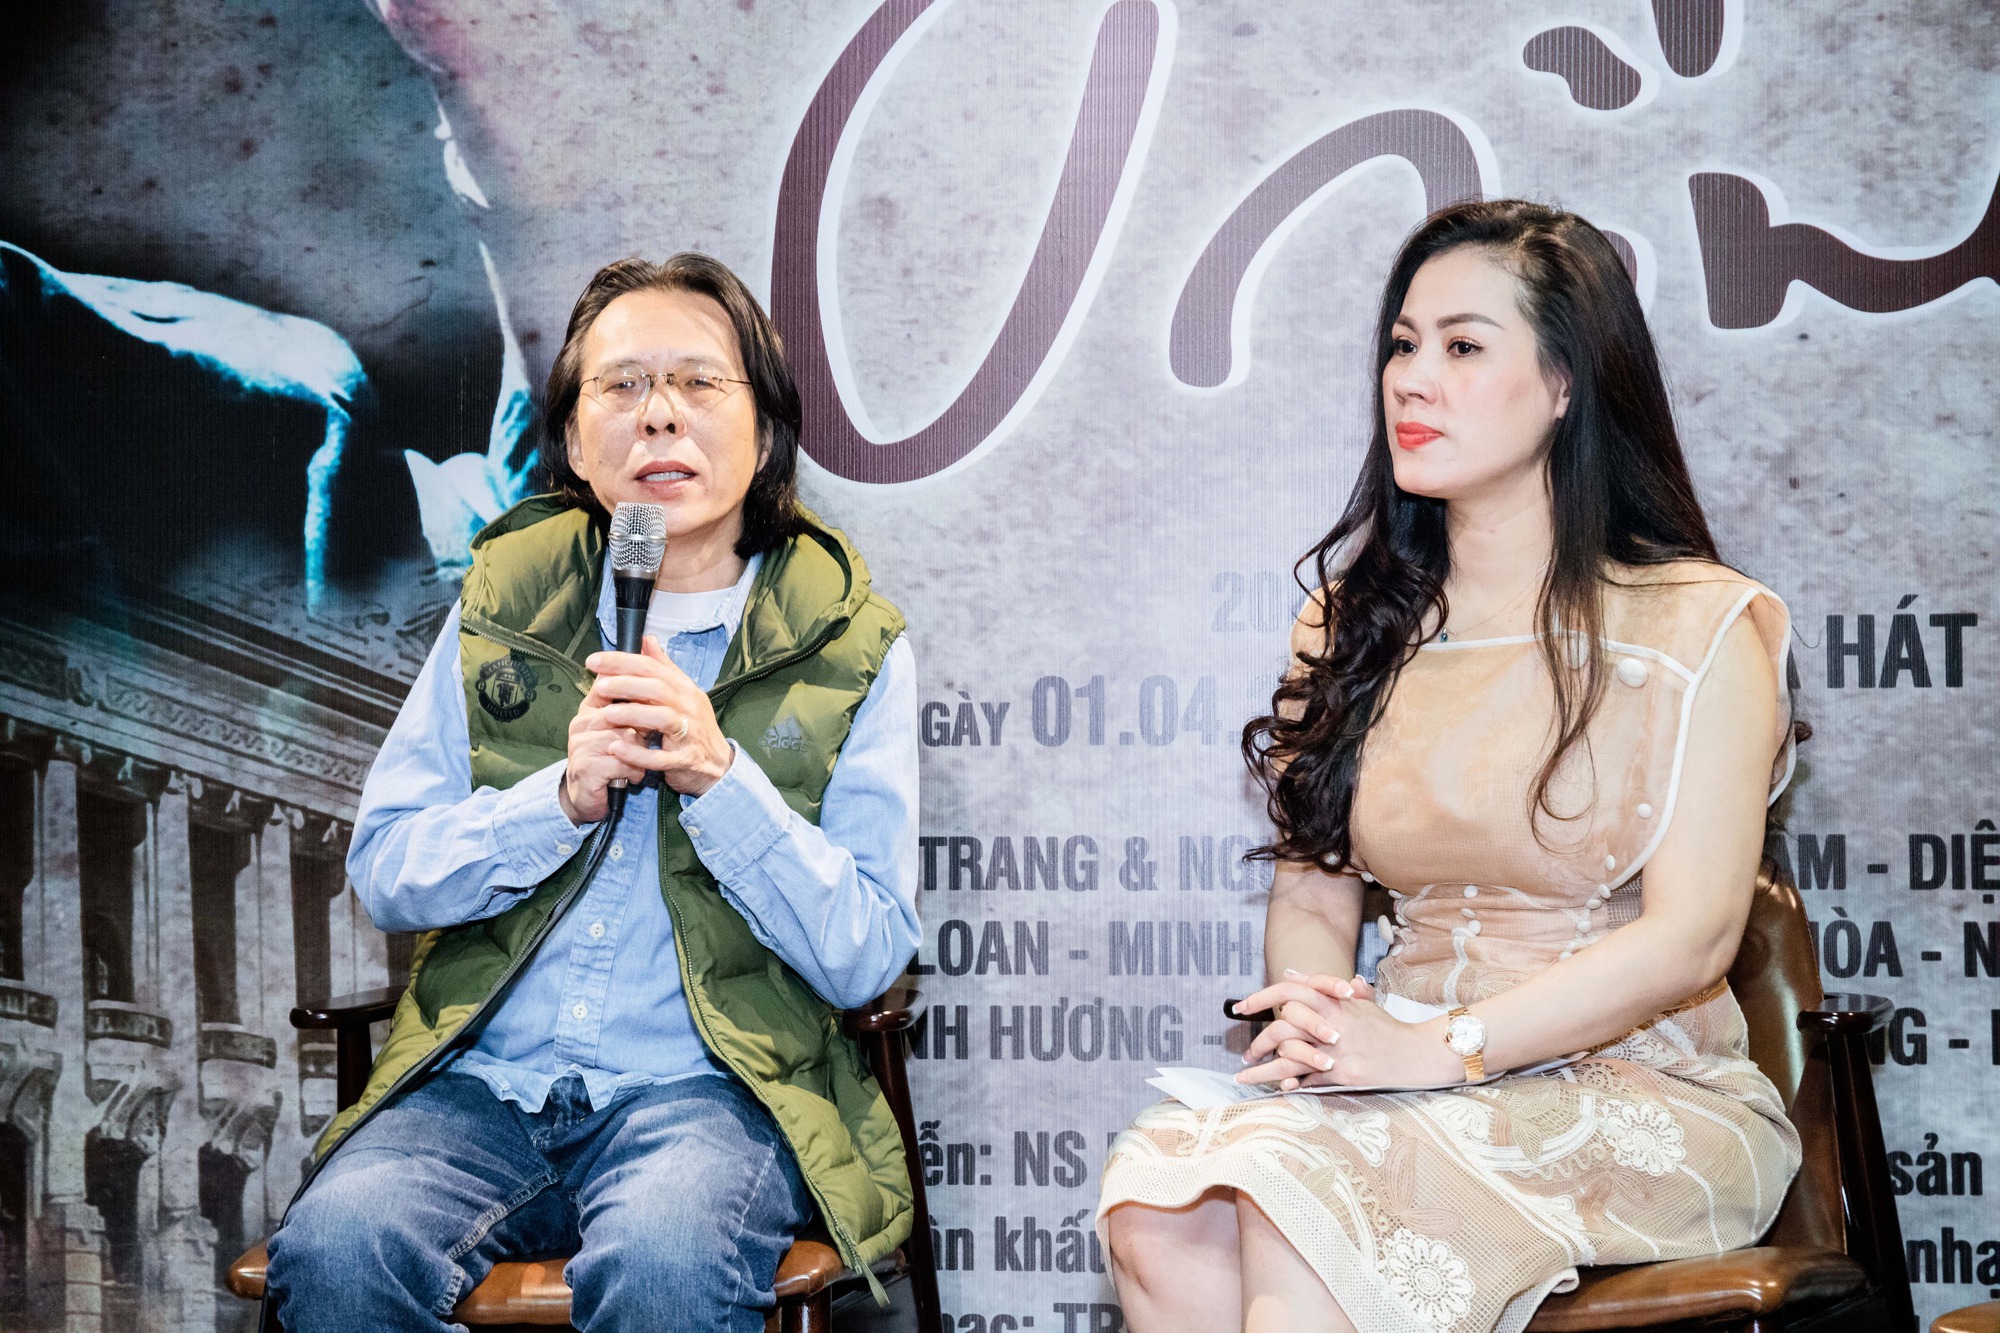 Những tiết lộ đặc biệt về mối quan hệ giữa nhạc sĩ Trịnh Công Sơn và nhạc sĩ Nguyễn Ánh 9 - Ảnh 1.